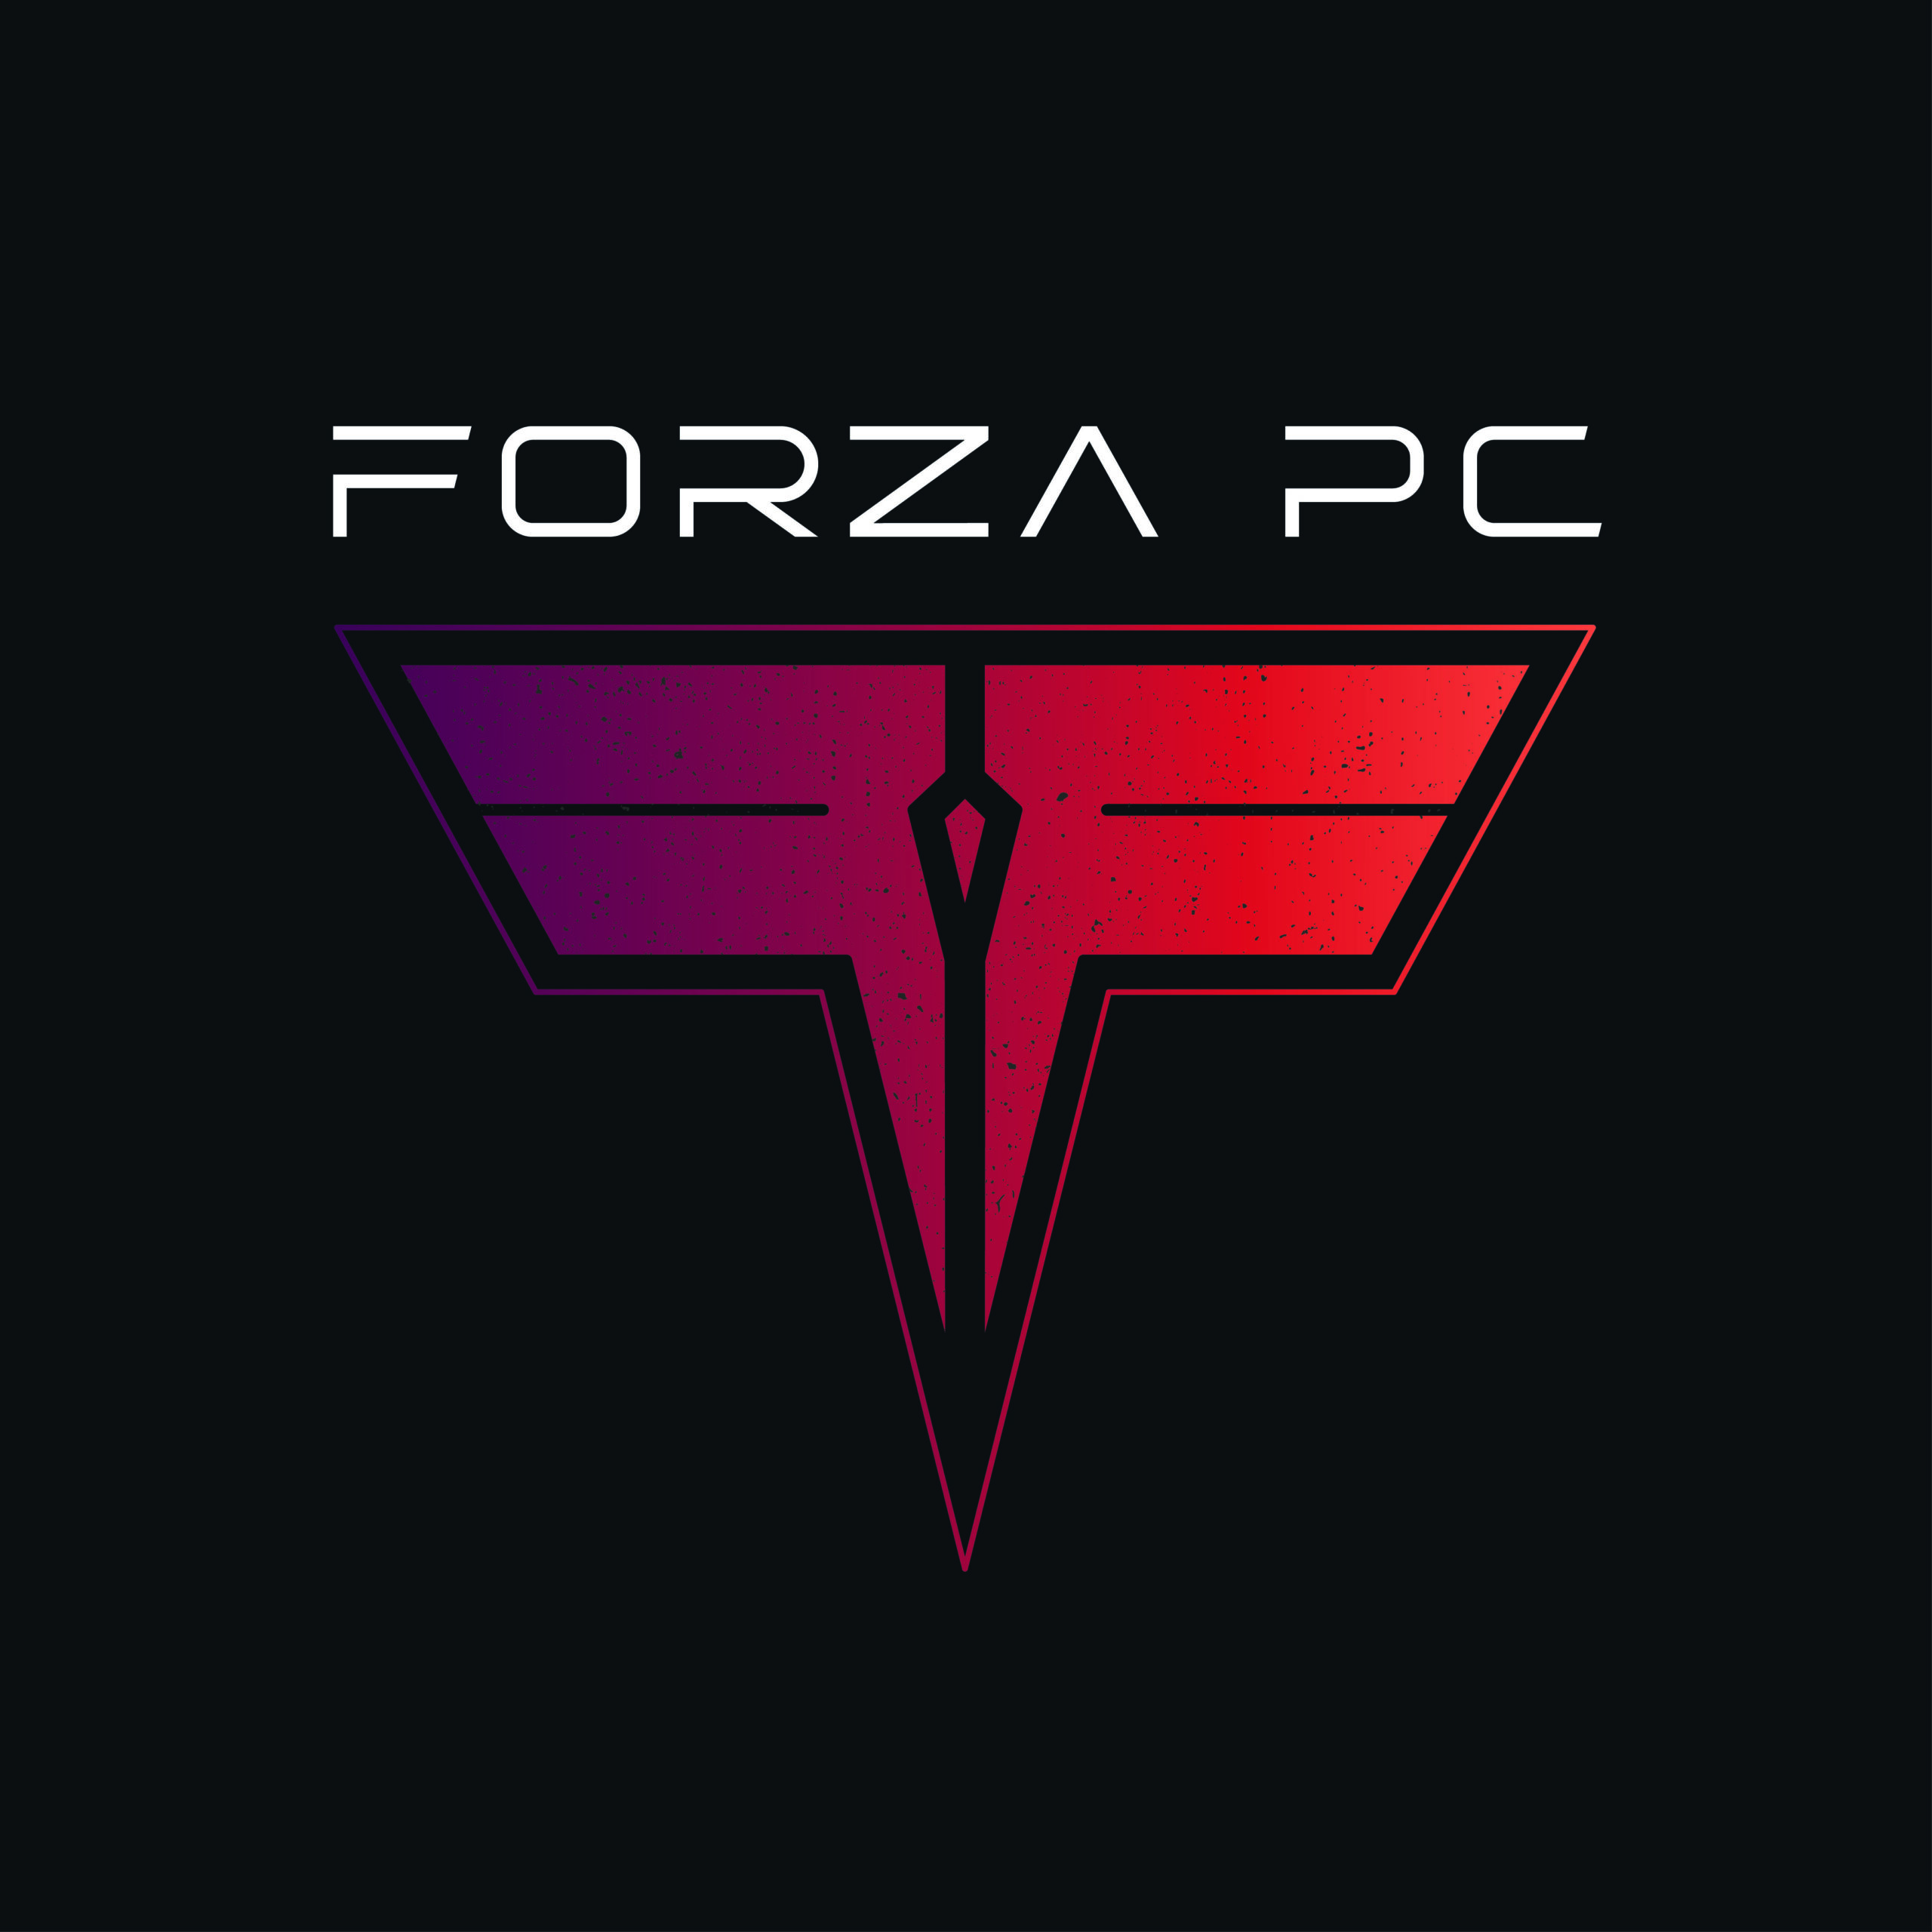 Forza PC